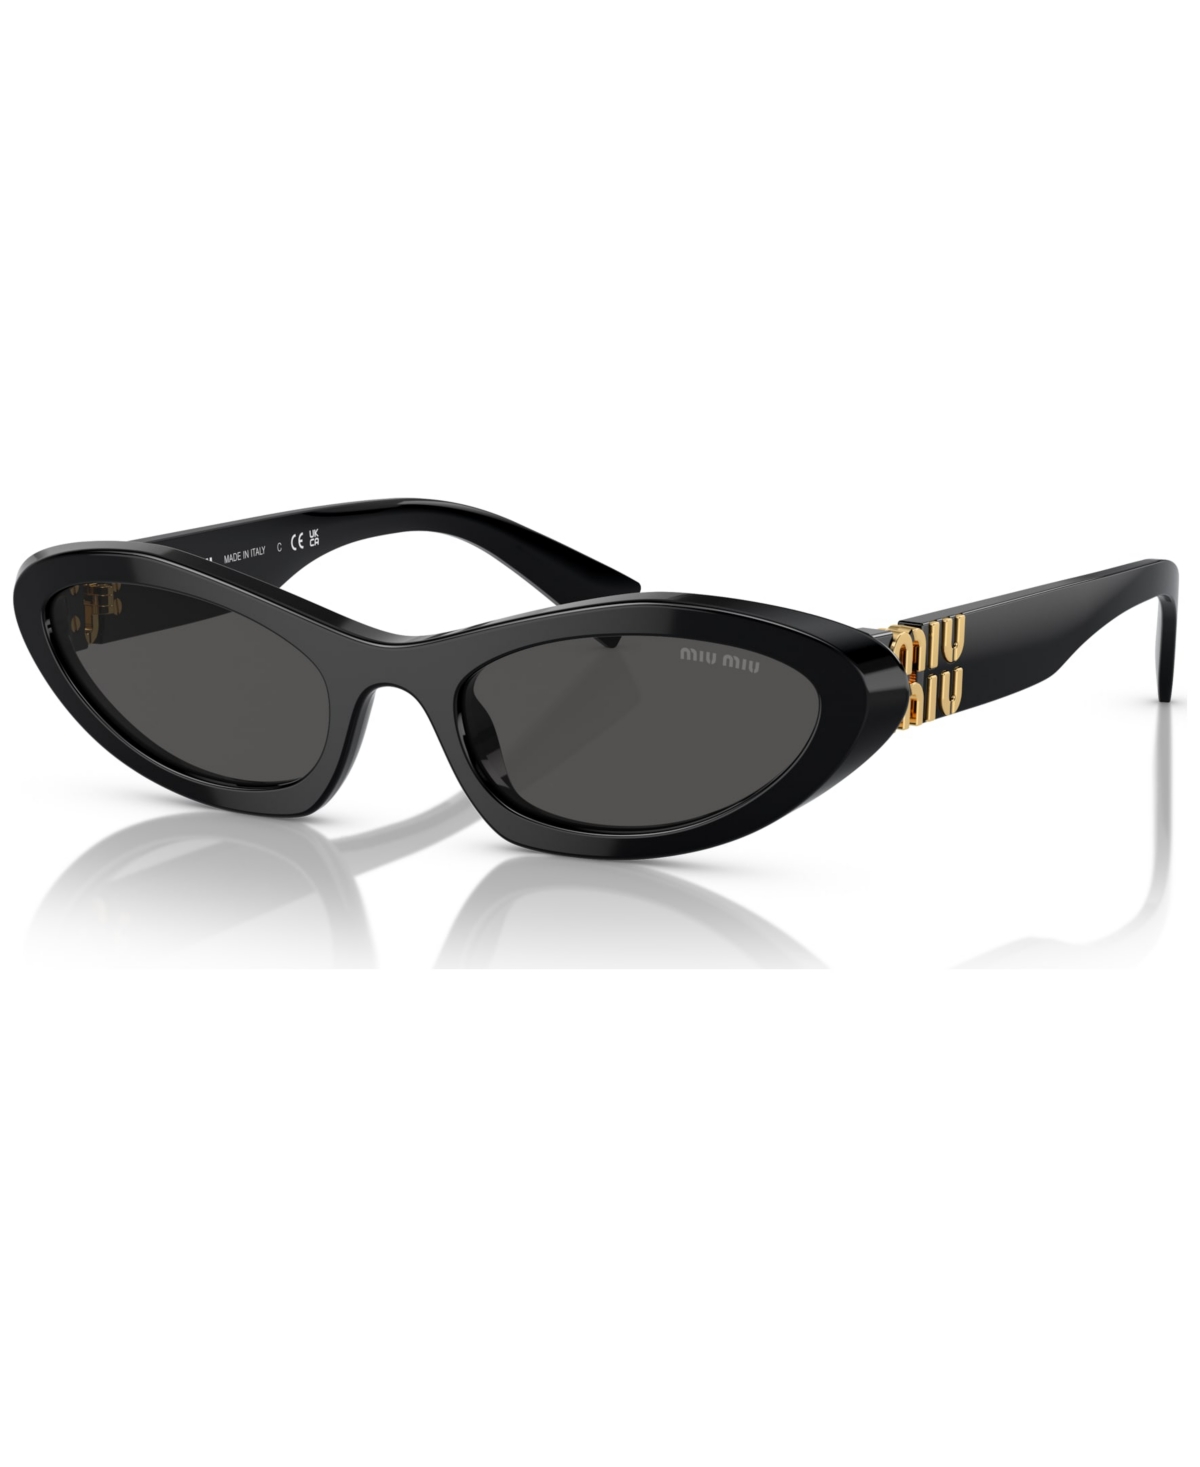 Miu Miu Women's Sunglasses, Mu 09ys In Black